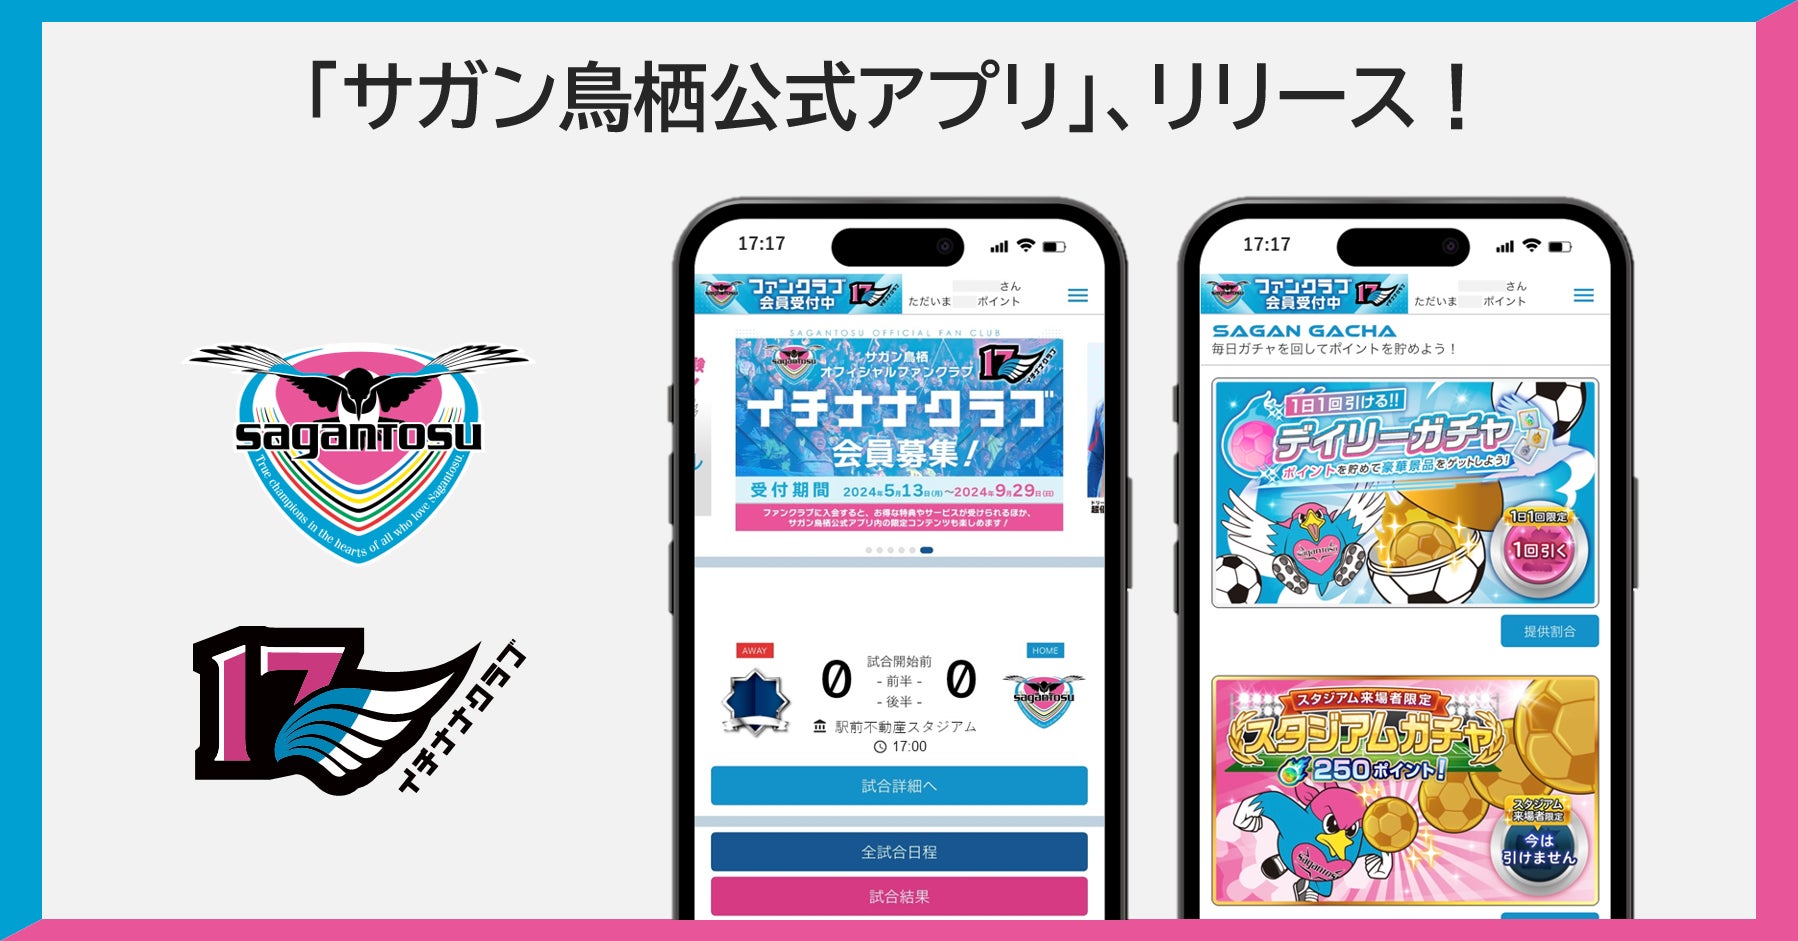 木村情報技術、サッカーJ1「サガン鳥栖」初の公式アプリを5月13日にリリース。ファンクラブと連携し、情報入手やガチャ、ポイント獲得など豊富な機能が満載